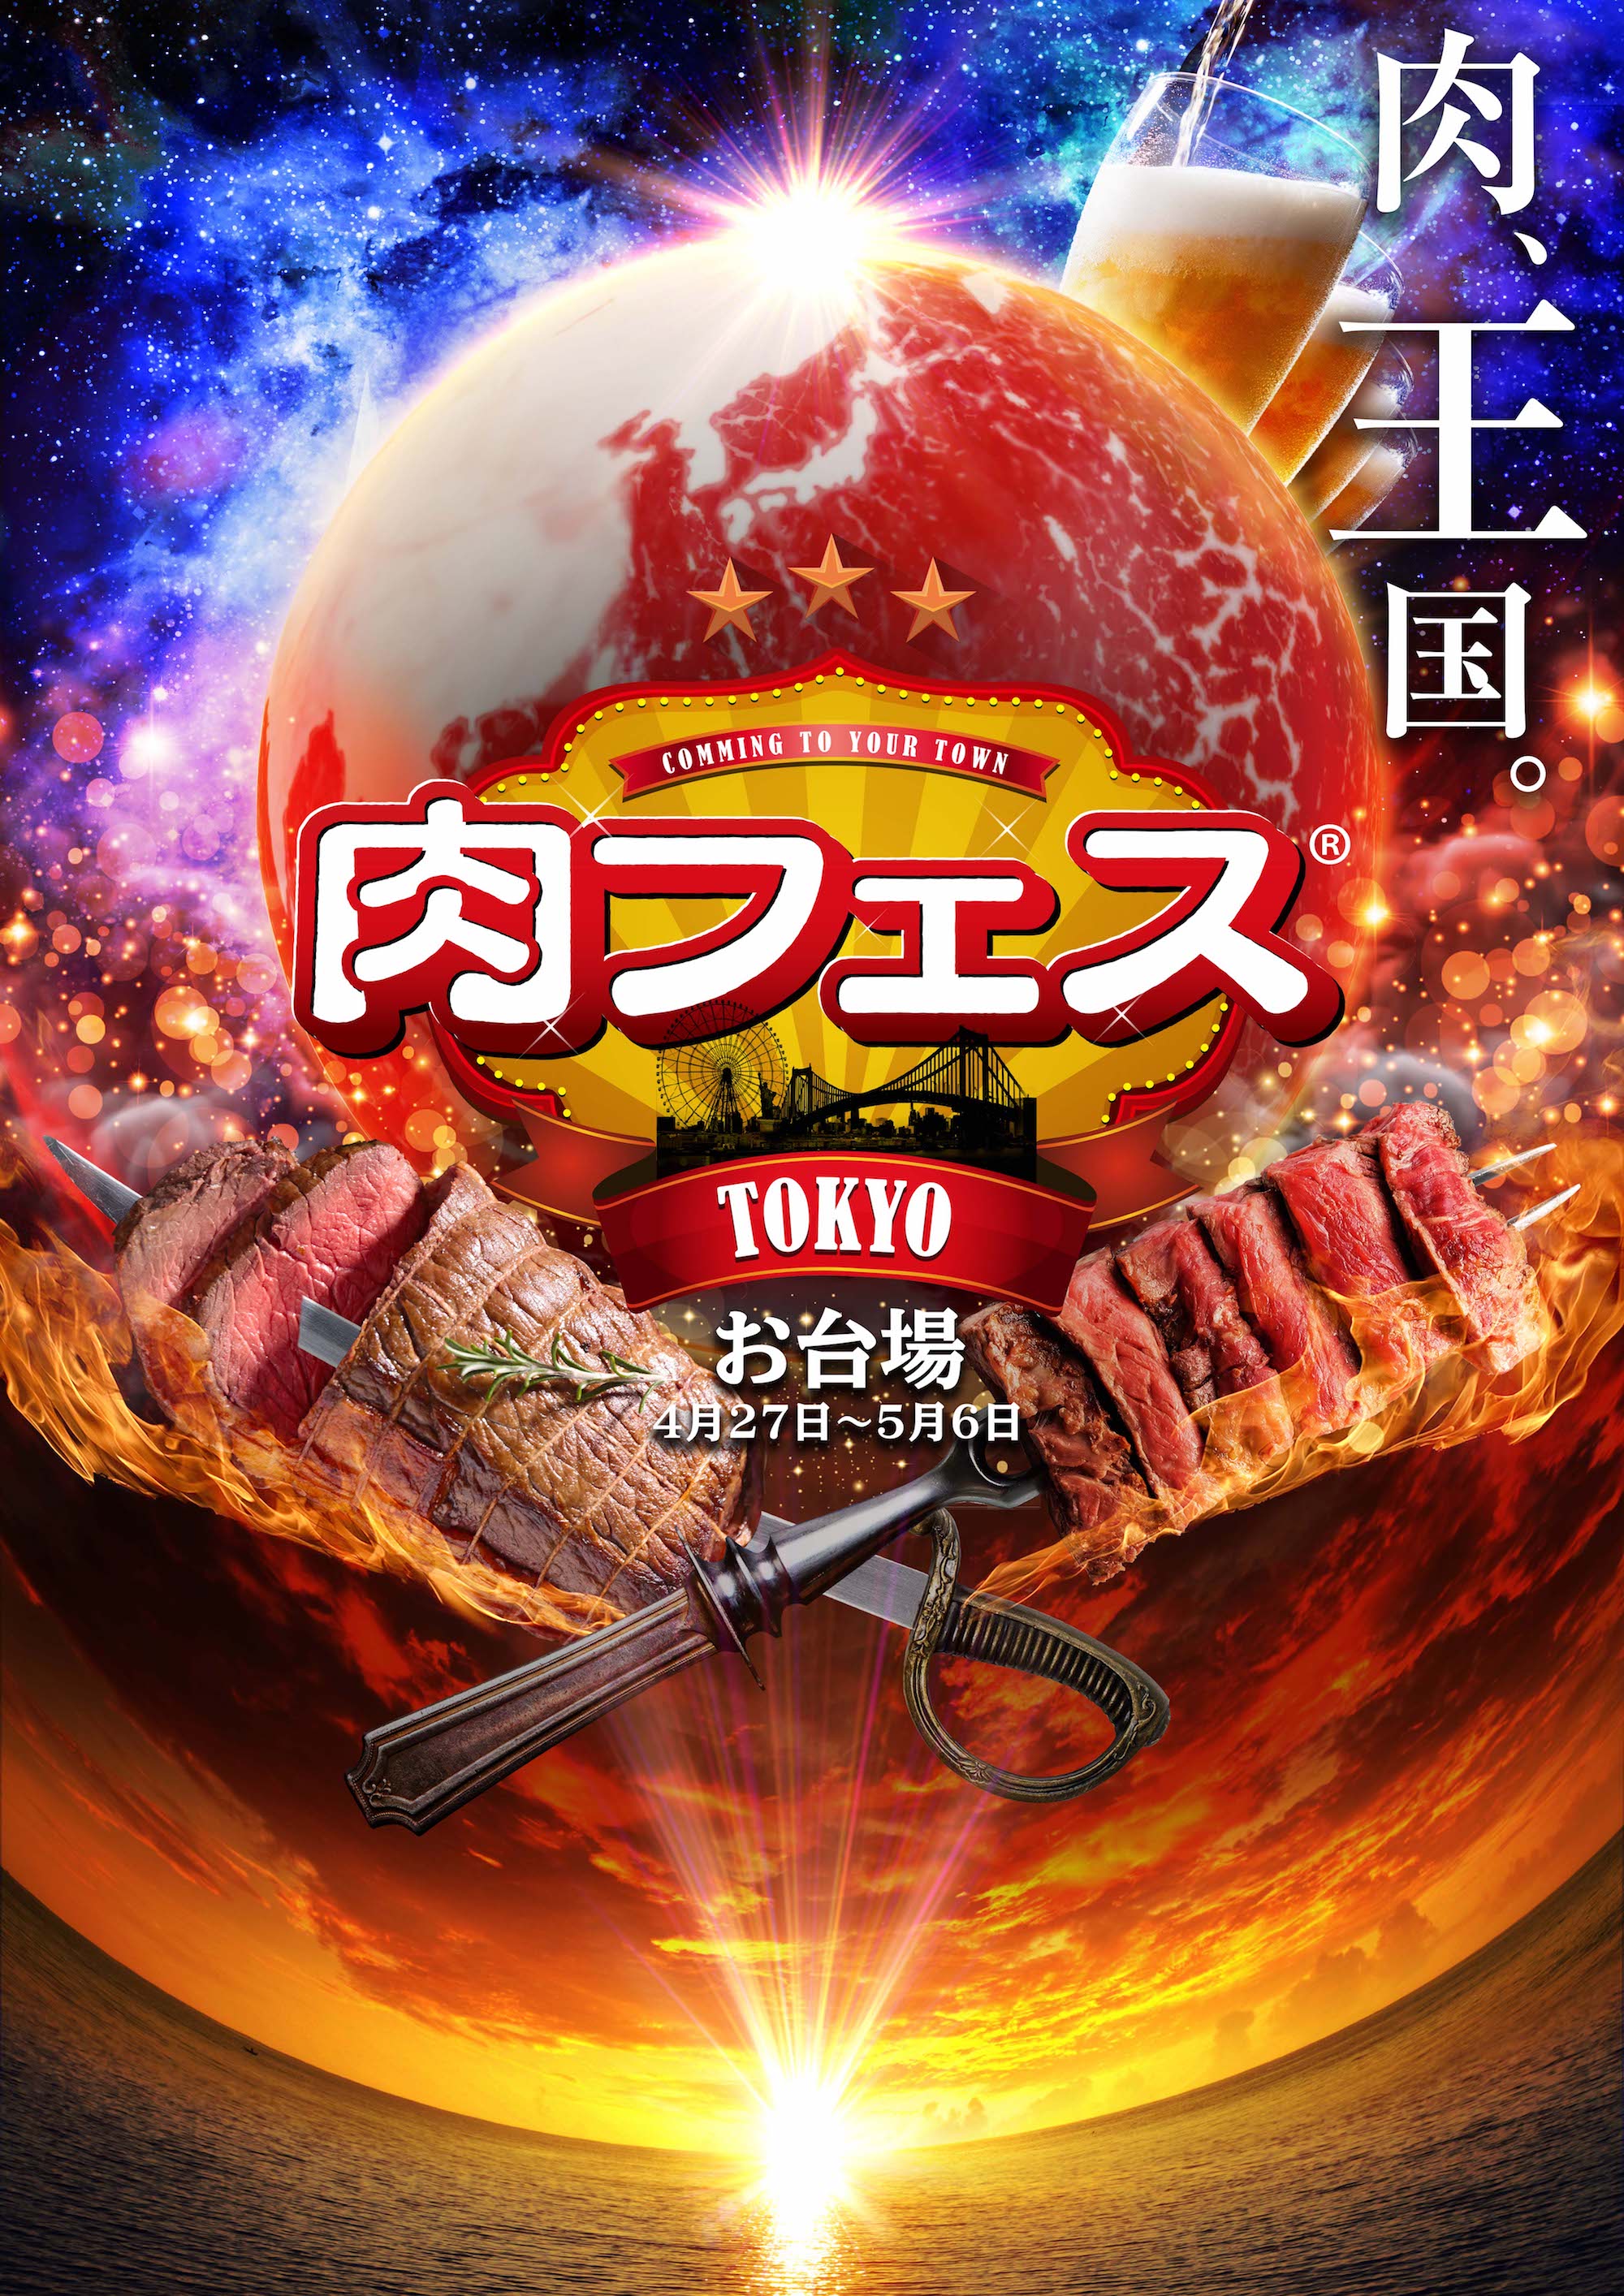 肉フェス Tokyo 18 が送るスペシャルステージとスポーツエリアを公開 肉 だけじゃない エンタメの最先端を担うステージ企画が目白押し tj株式会社のプレスリリース